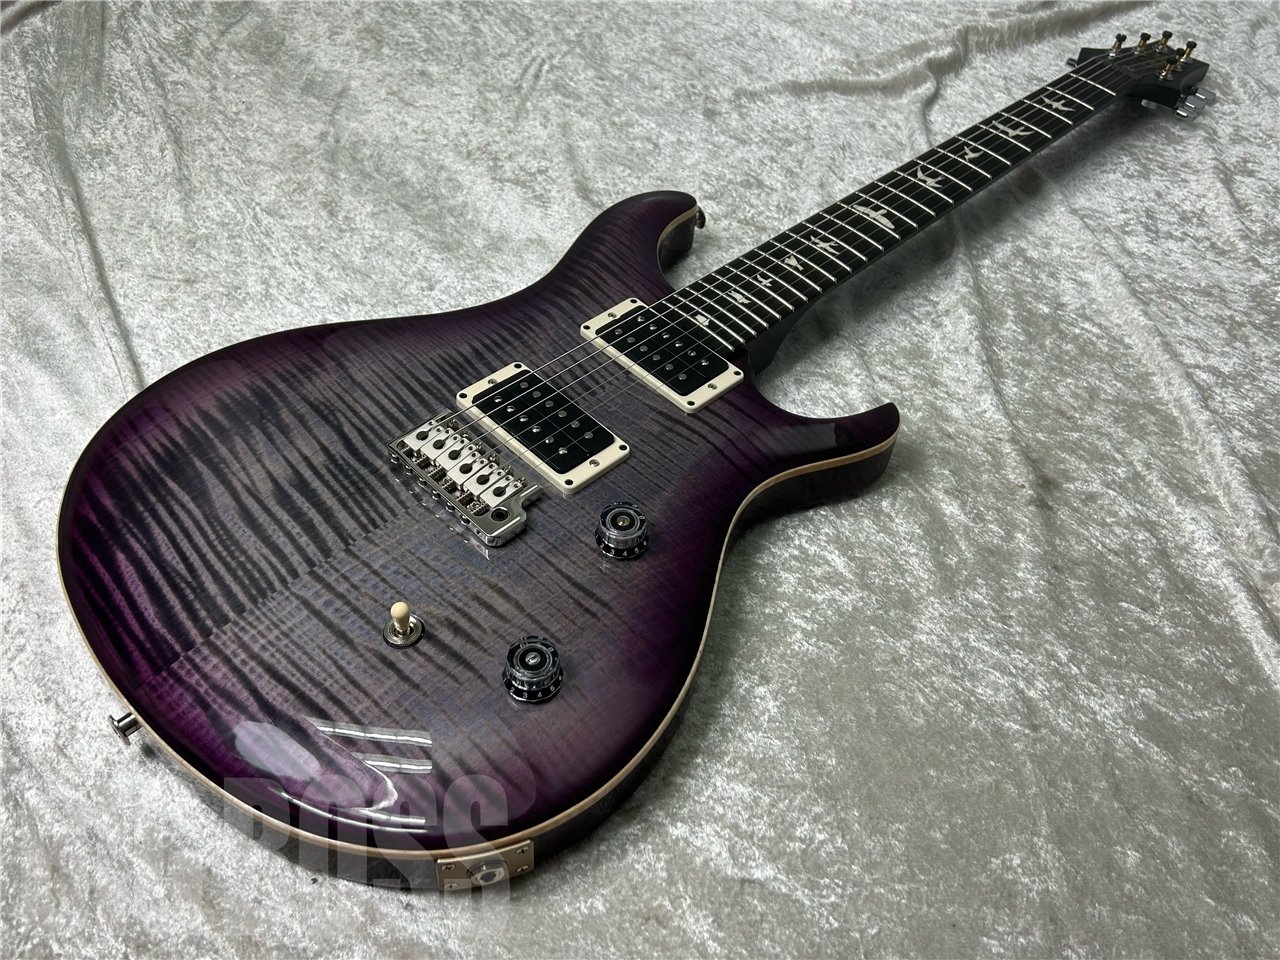 【即納可能】Paul Reed Smith(ポールリードスミス/PRS) CE 24 Custom Configuration / Faded Gray Black Purple Burst お茶の水駅前店(東京)